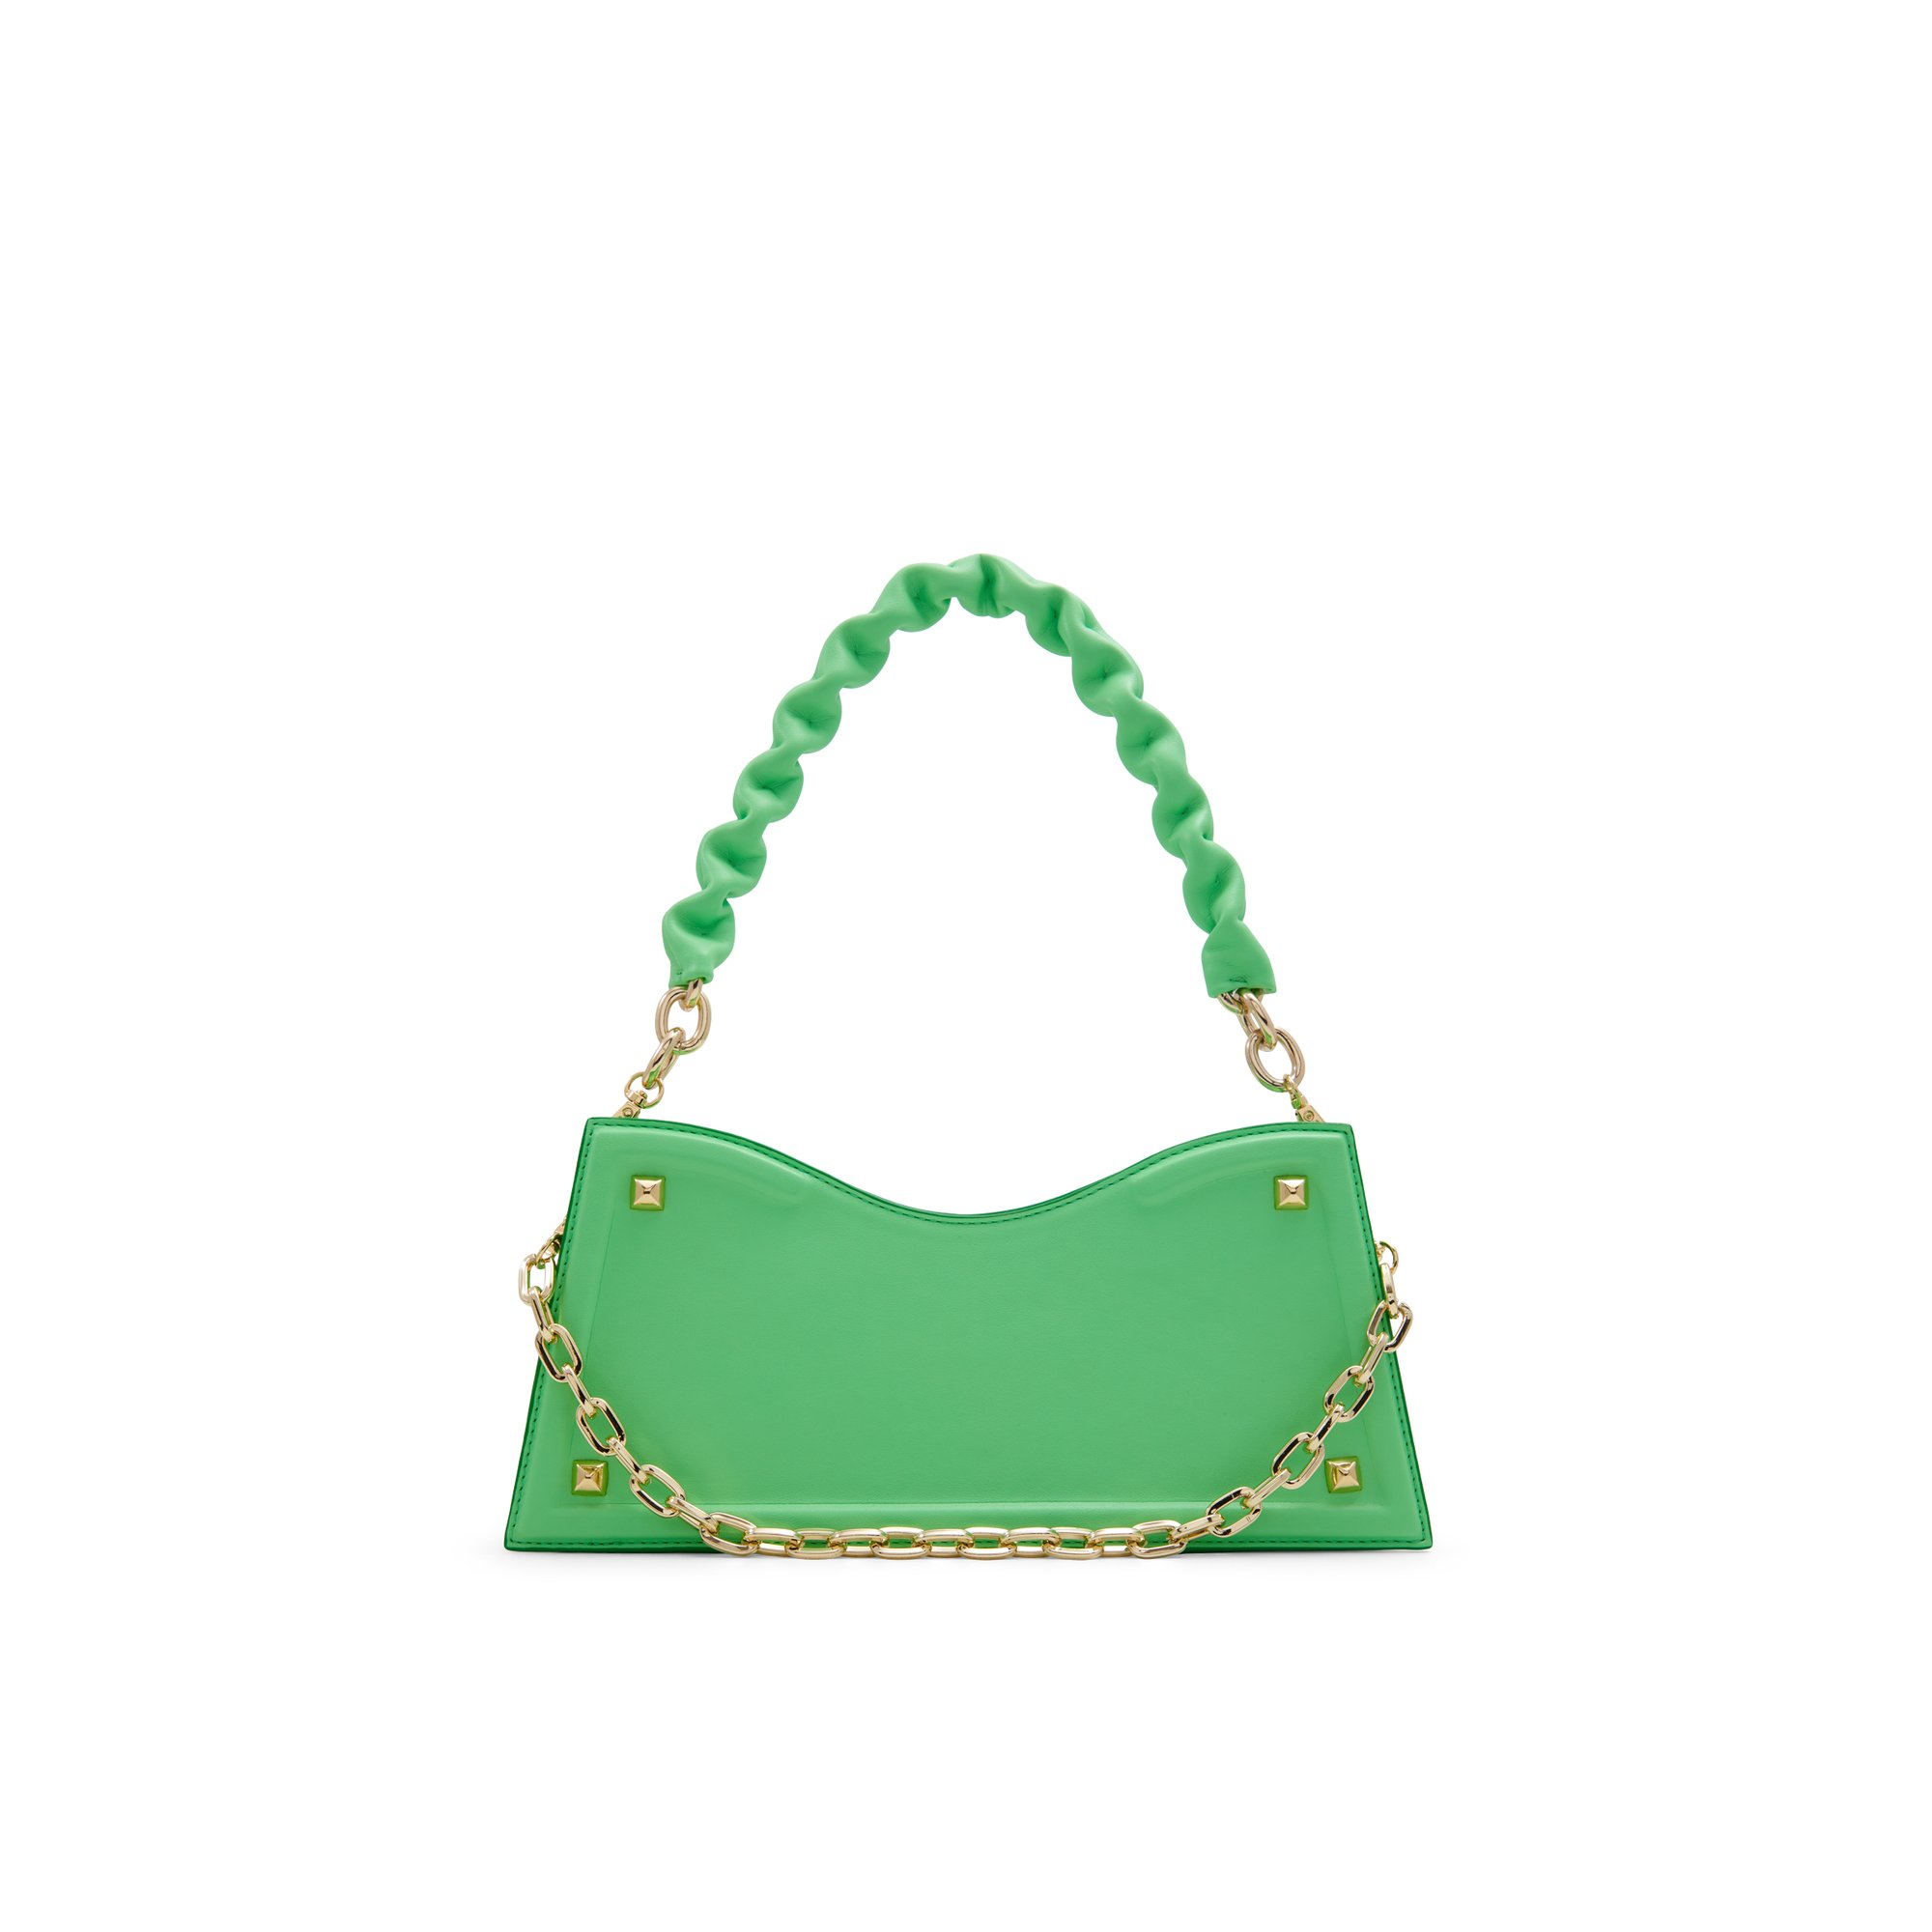 ALDO Bonitax - Women's Handbags Shoulder Bags - Green